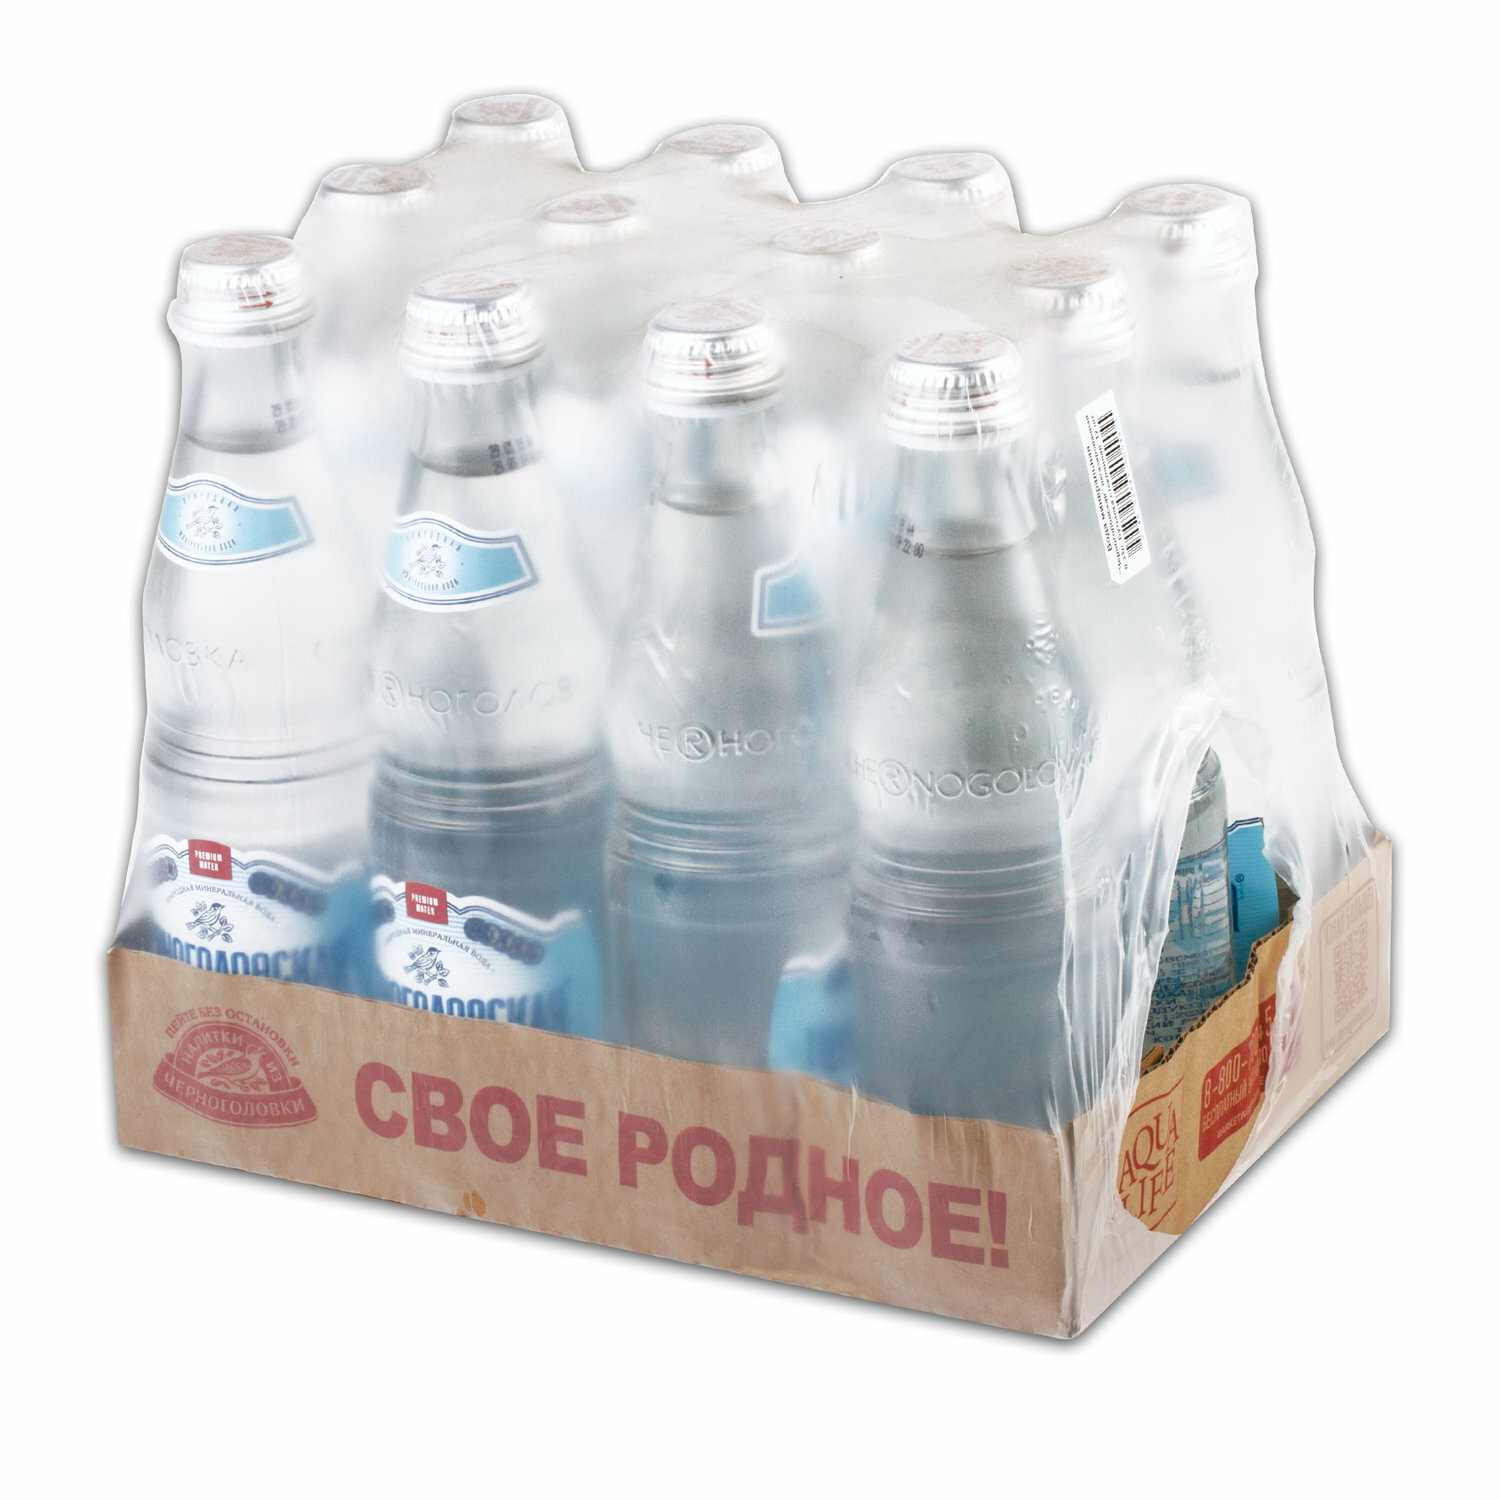 Вода питьевая "Черноголовская", 12 шт по 0,33л, без газа, стекло